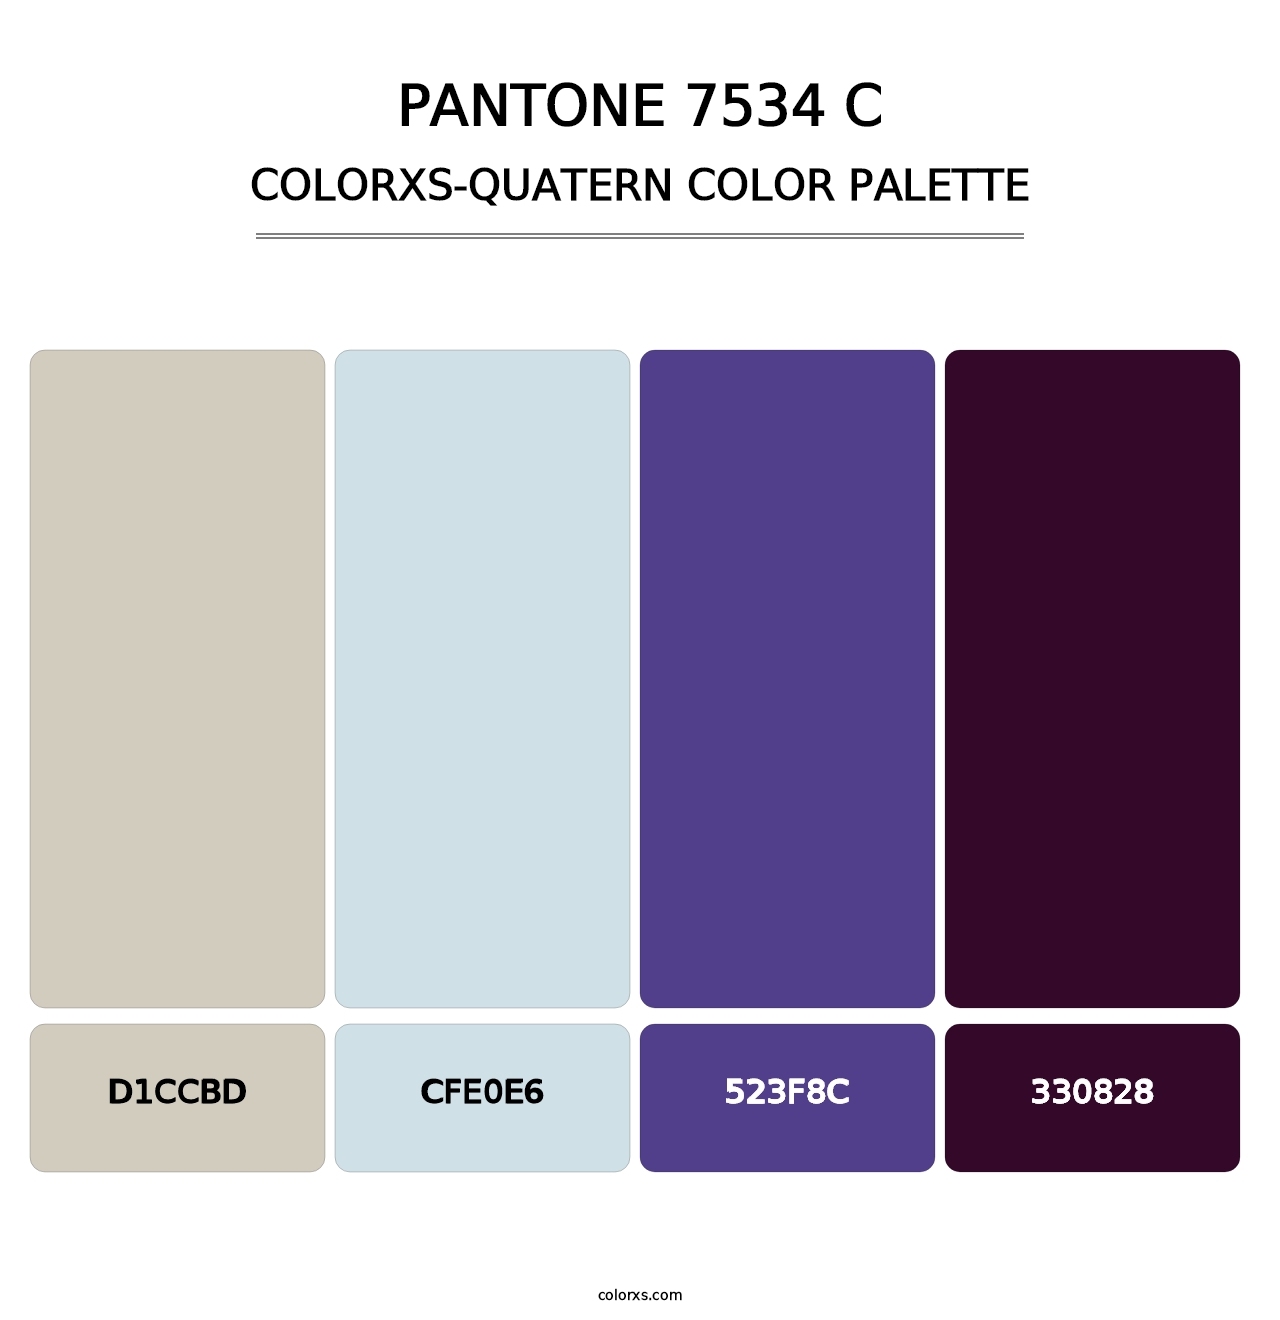 PANTONE 7534 C - Colorxs Quatern Palette